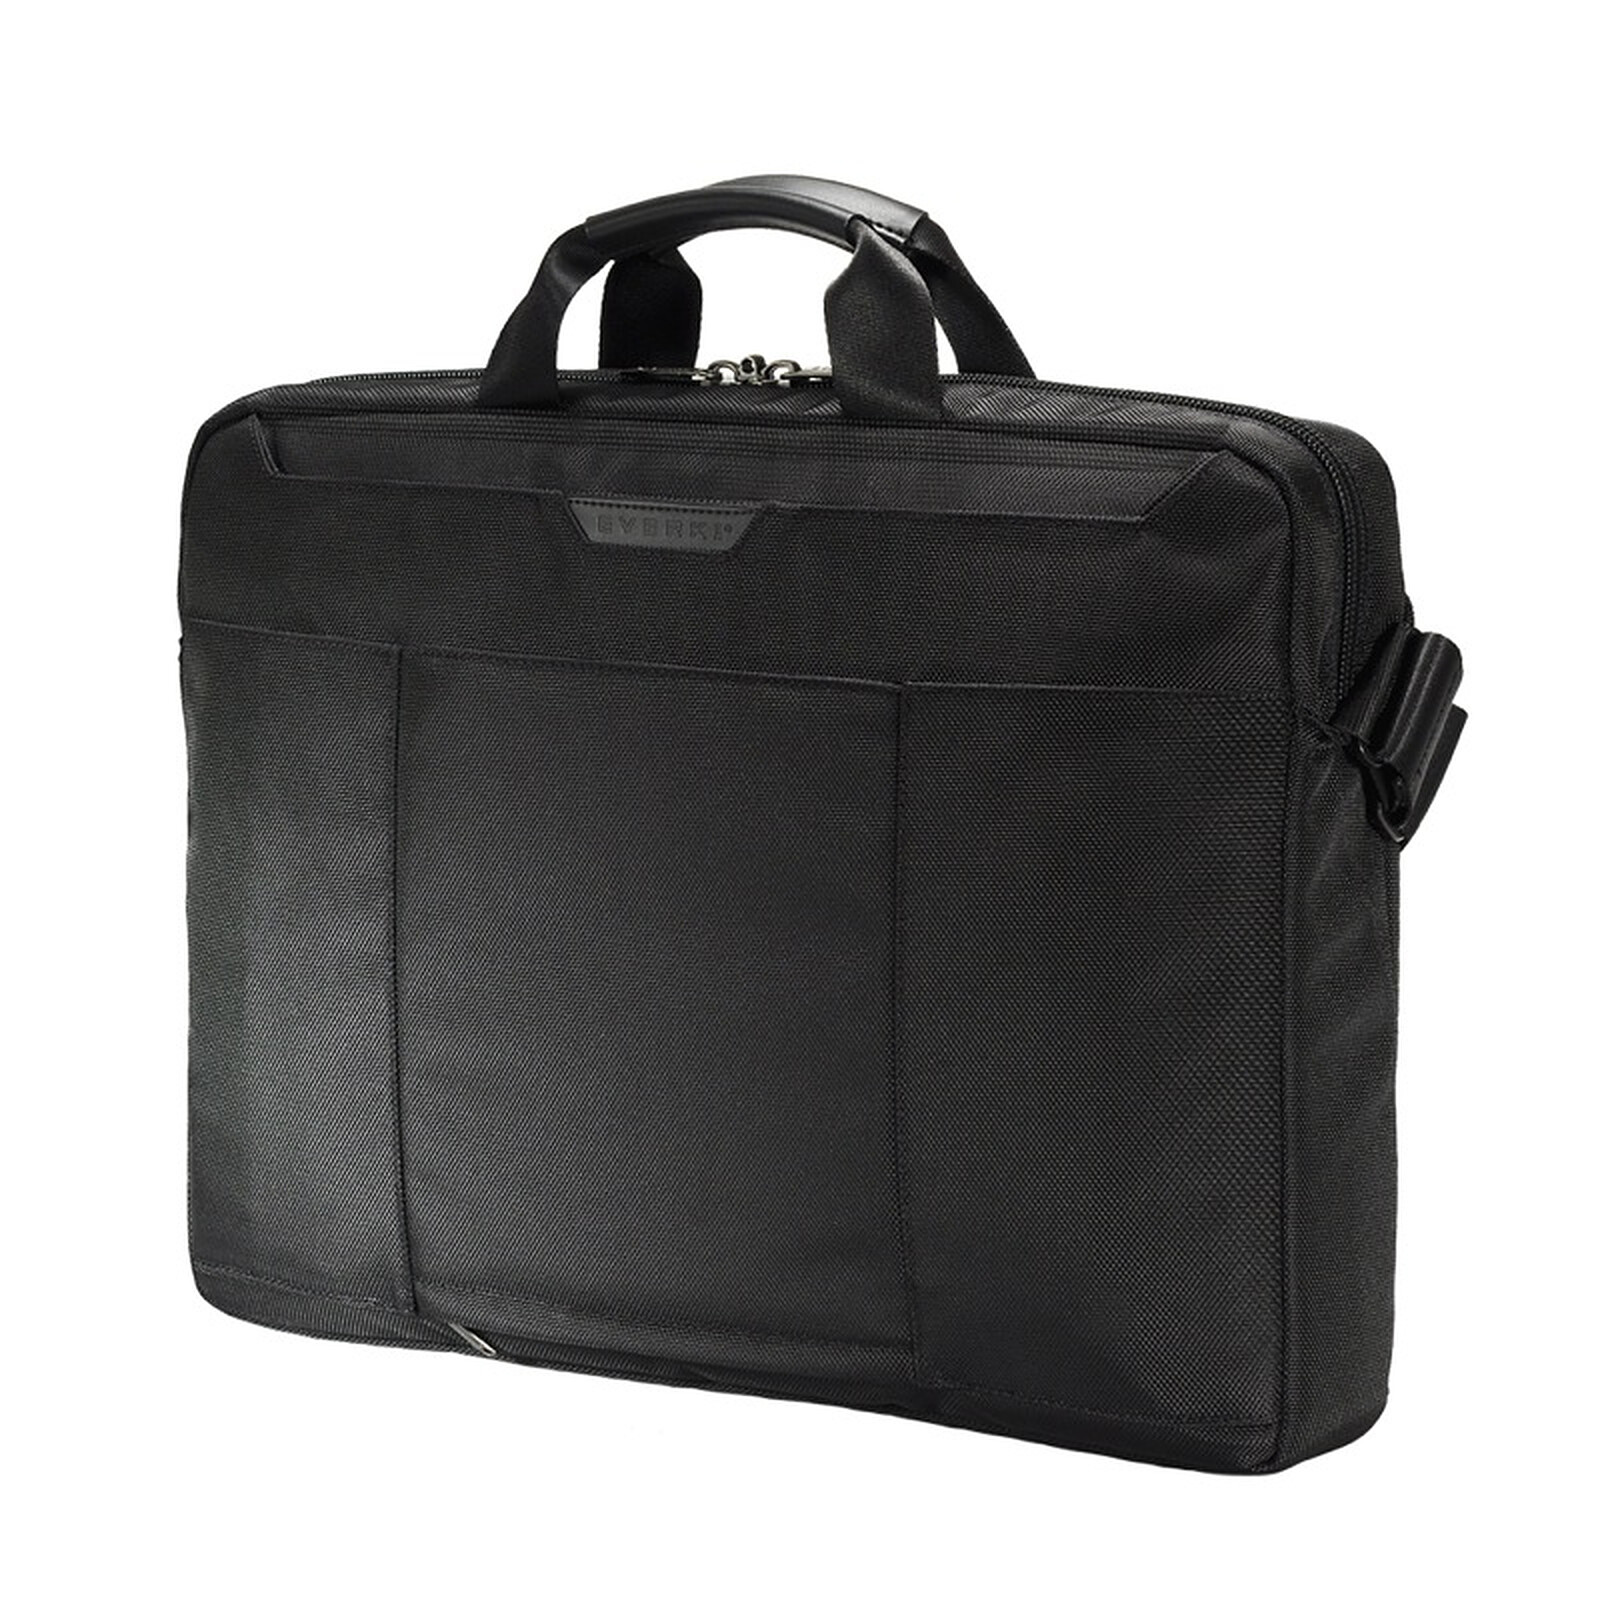 Everki Lunar 18 - Bag, backpack, case - LDLC 3-year warranty